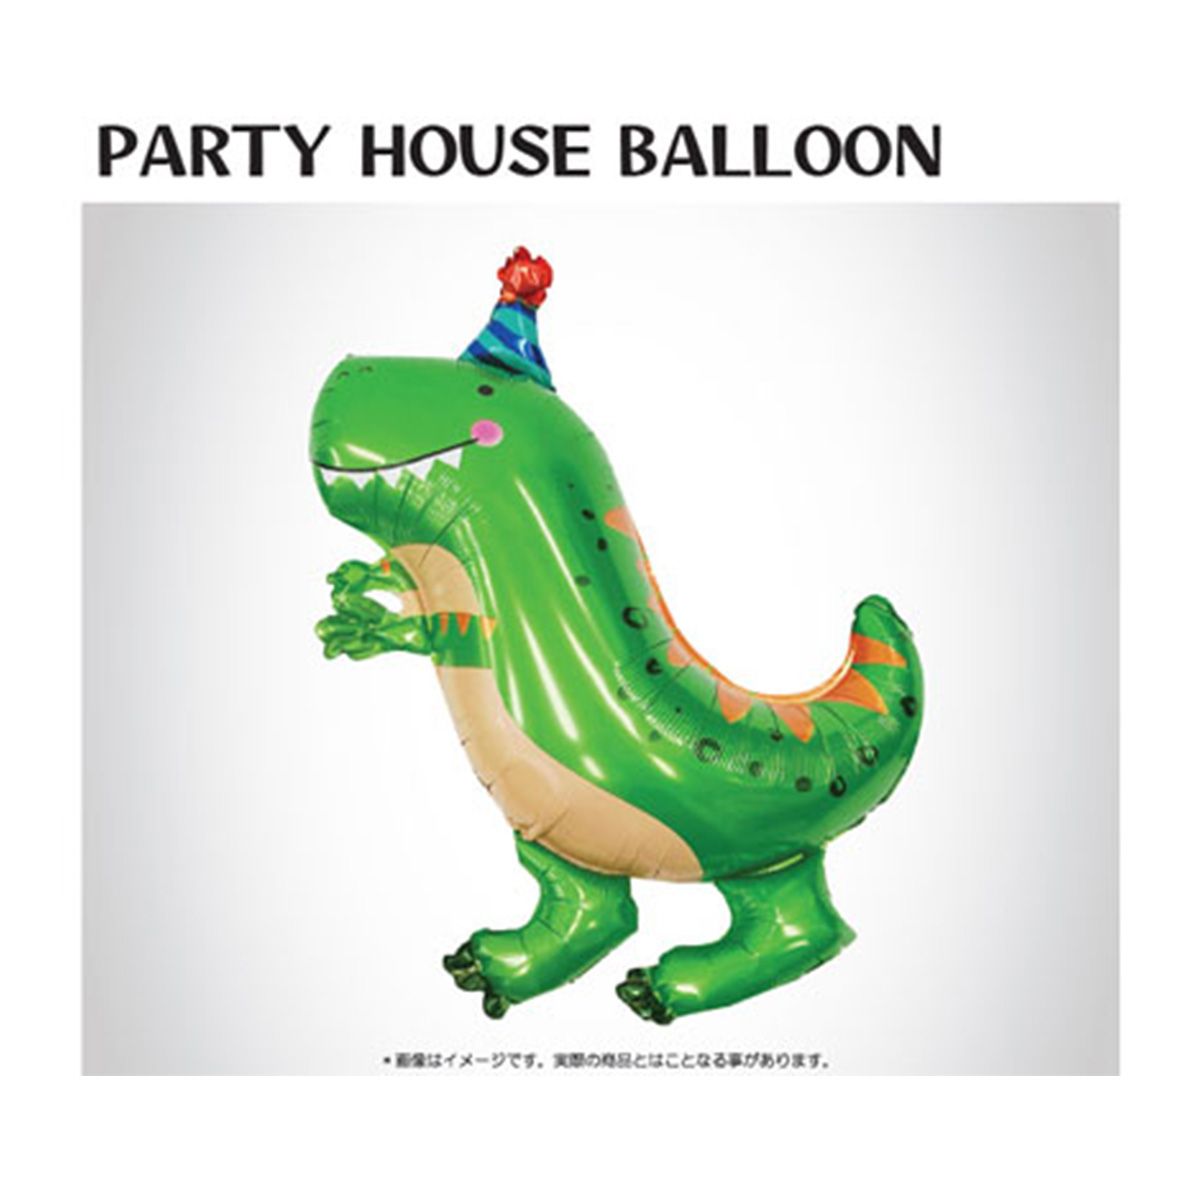 風船 パーティーバルーン 恐竜 ダイナソー キッズパーティ誕生日会 MYB-003-T1N-1 362882